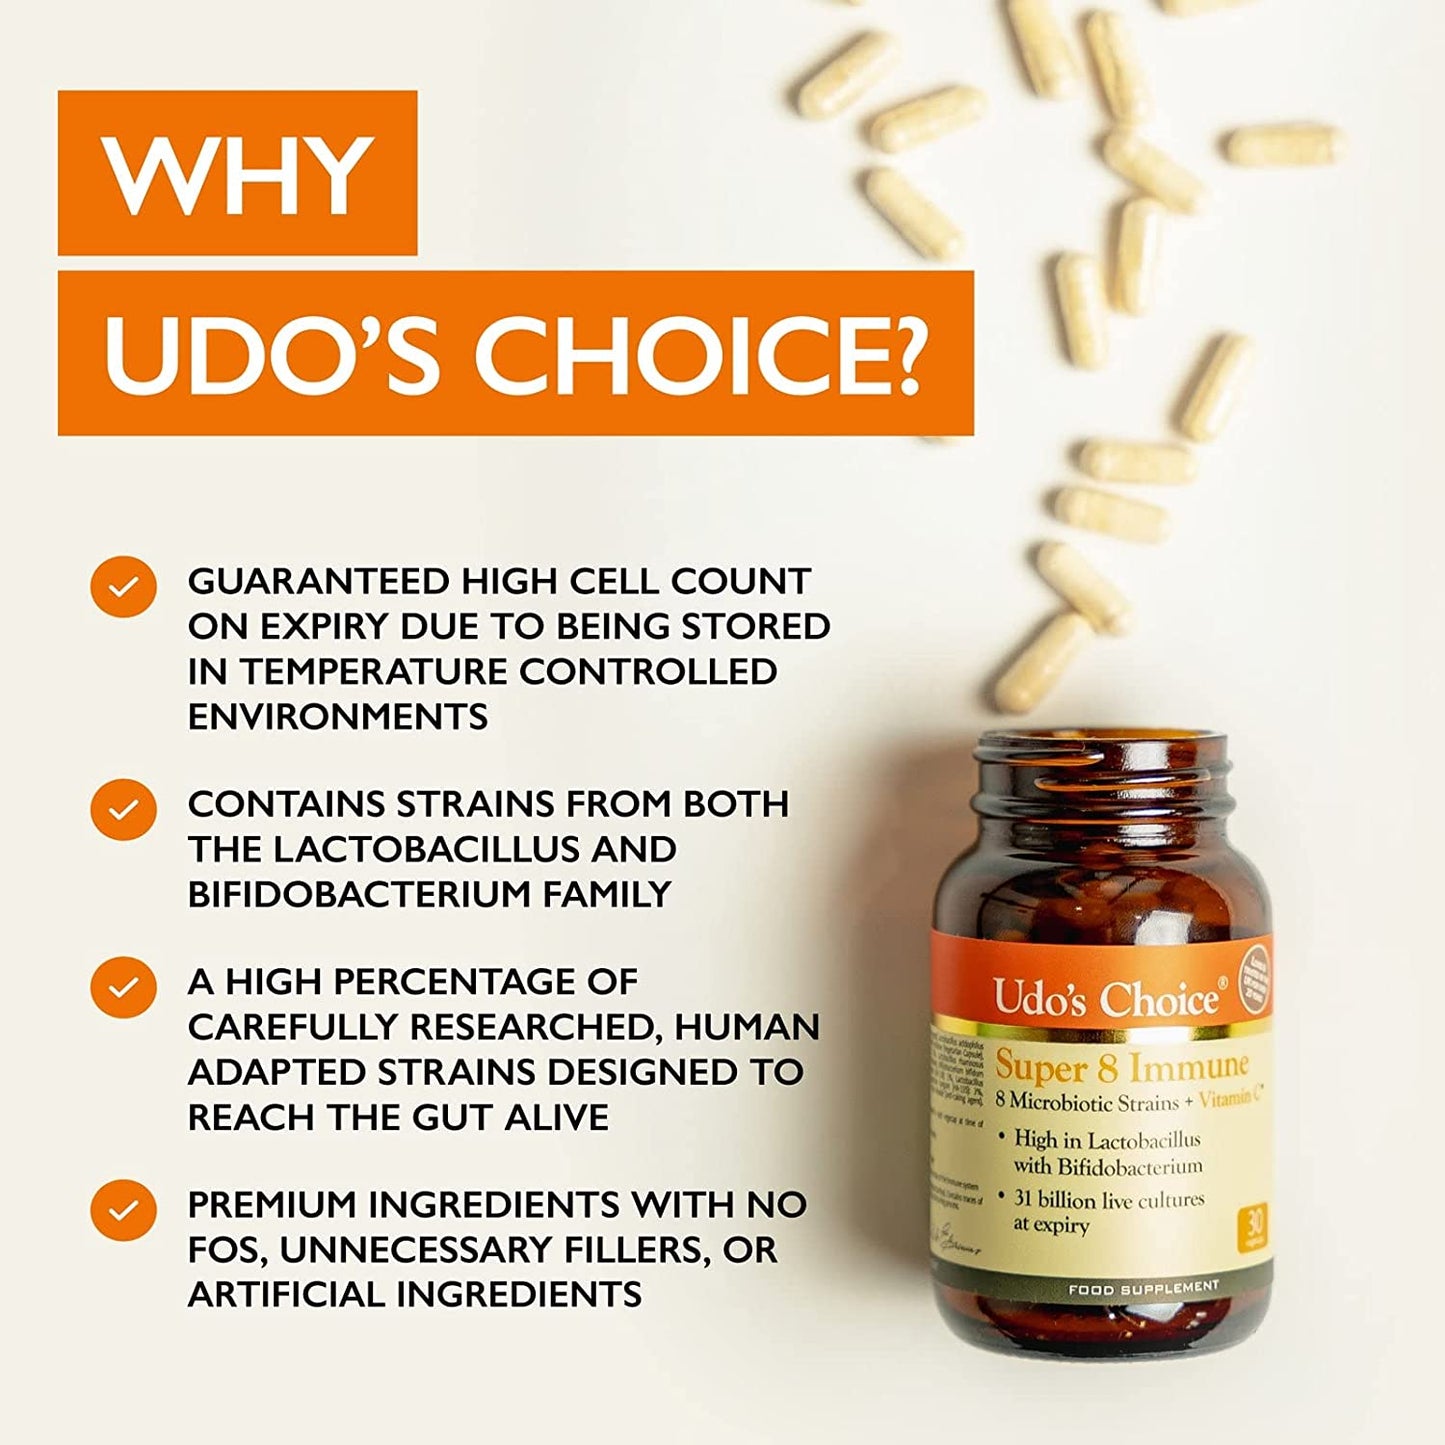 Udo’s Choice Super 8 Immune Microbiotics 60 Capsules